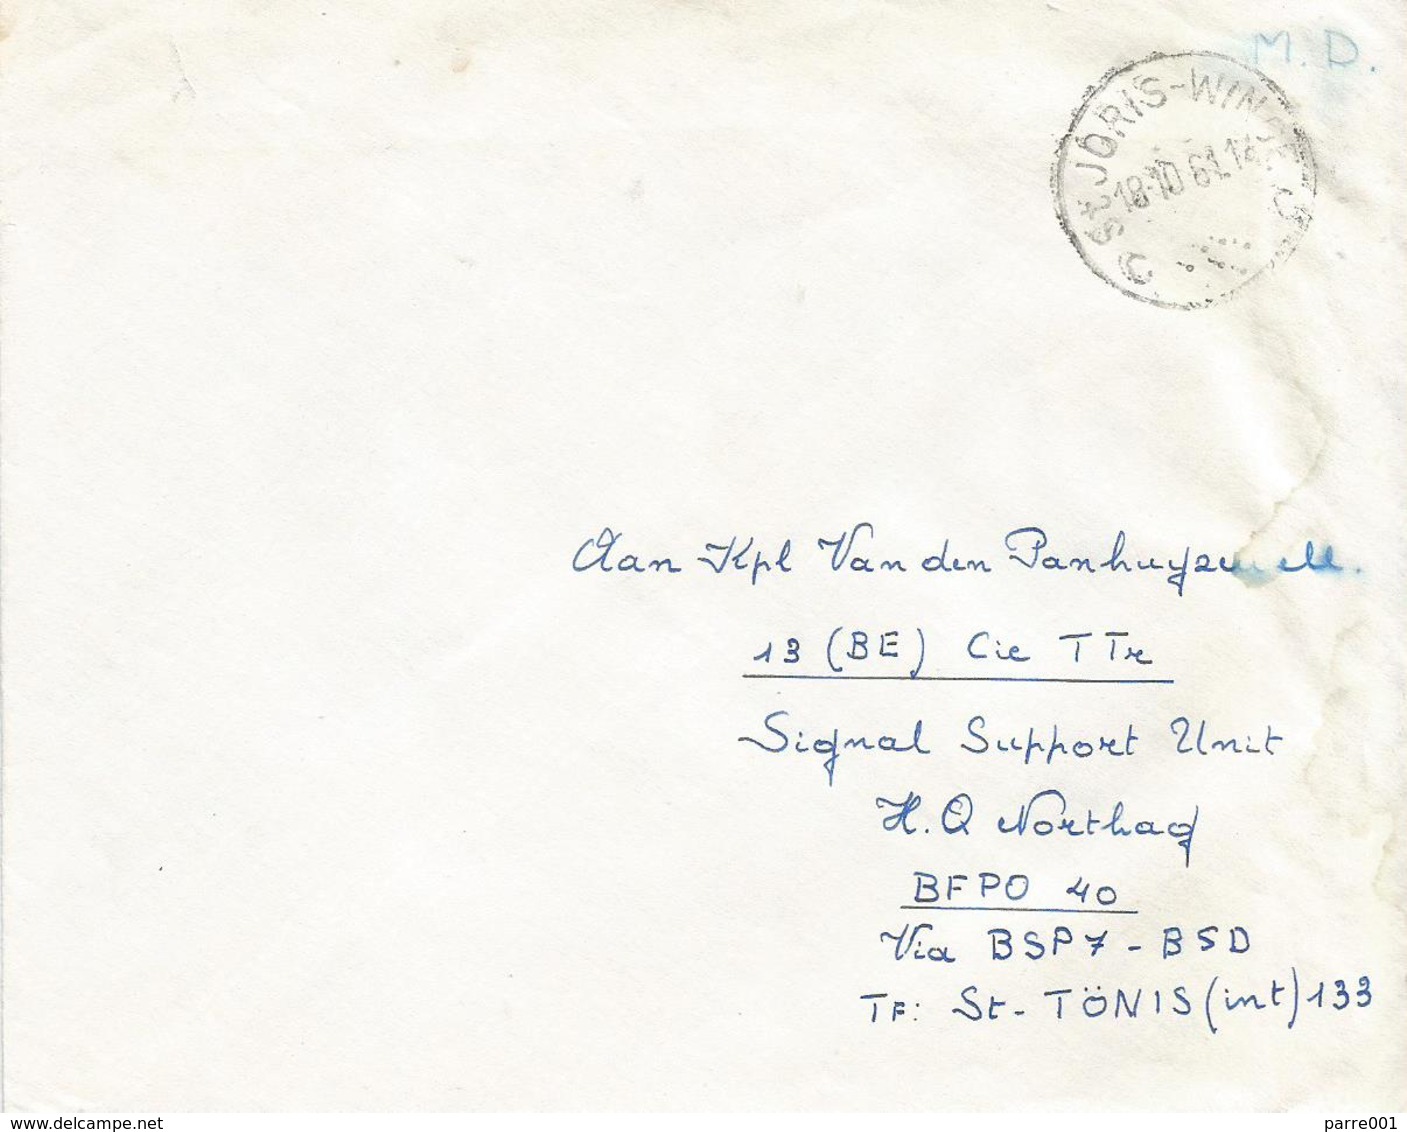 Belgie Belgique 1961 St Joris To Bureaux Postales Secondaires BSP7 Weiden Military Unfranked Cover - Army